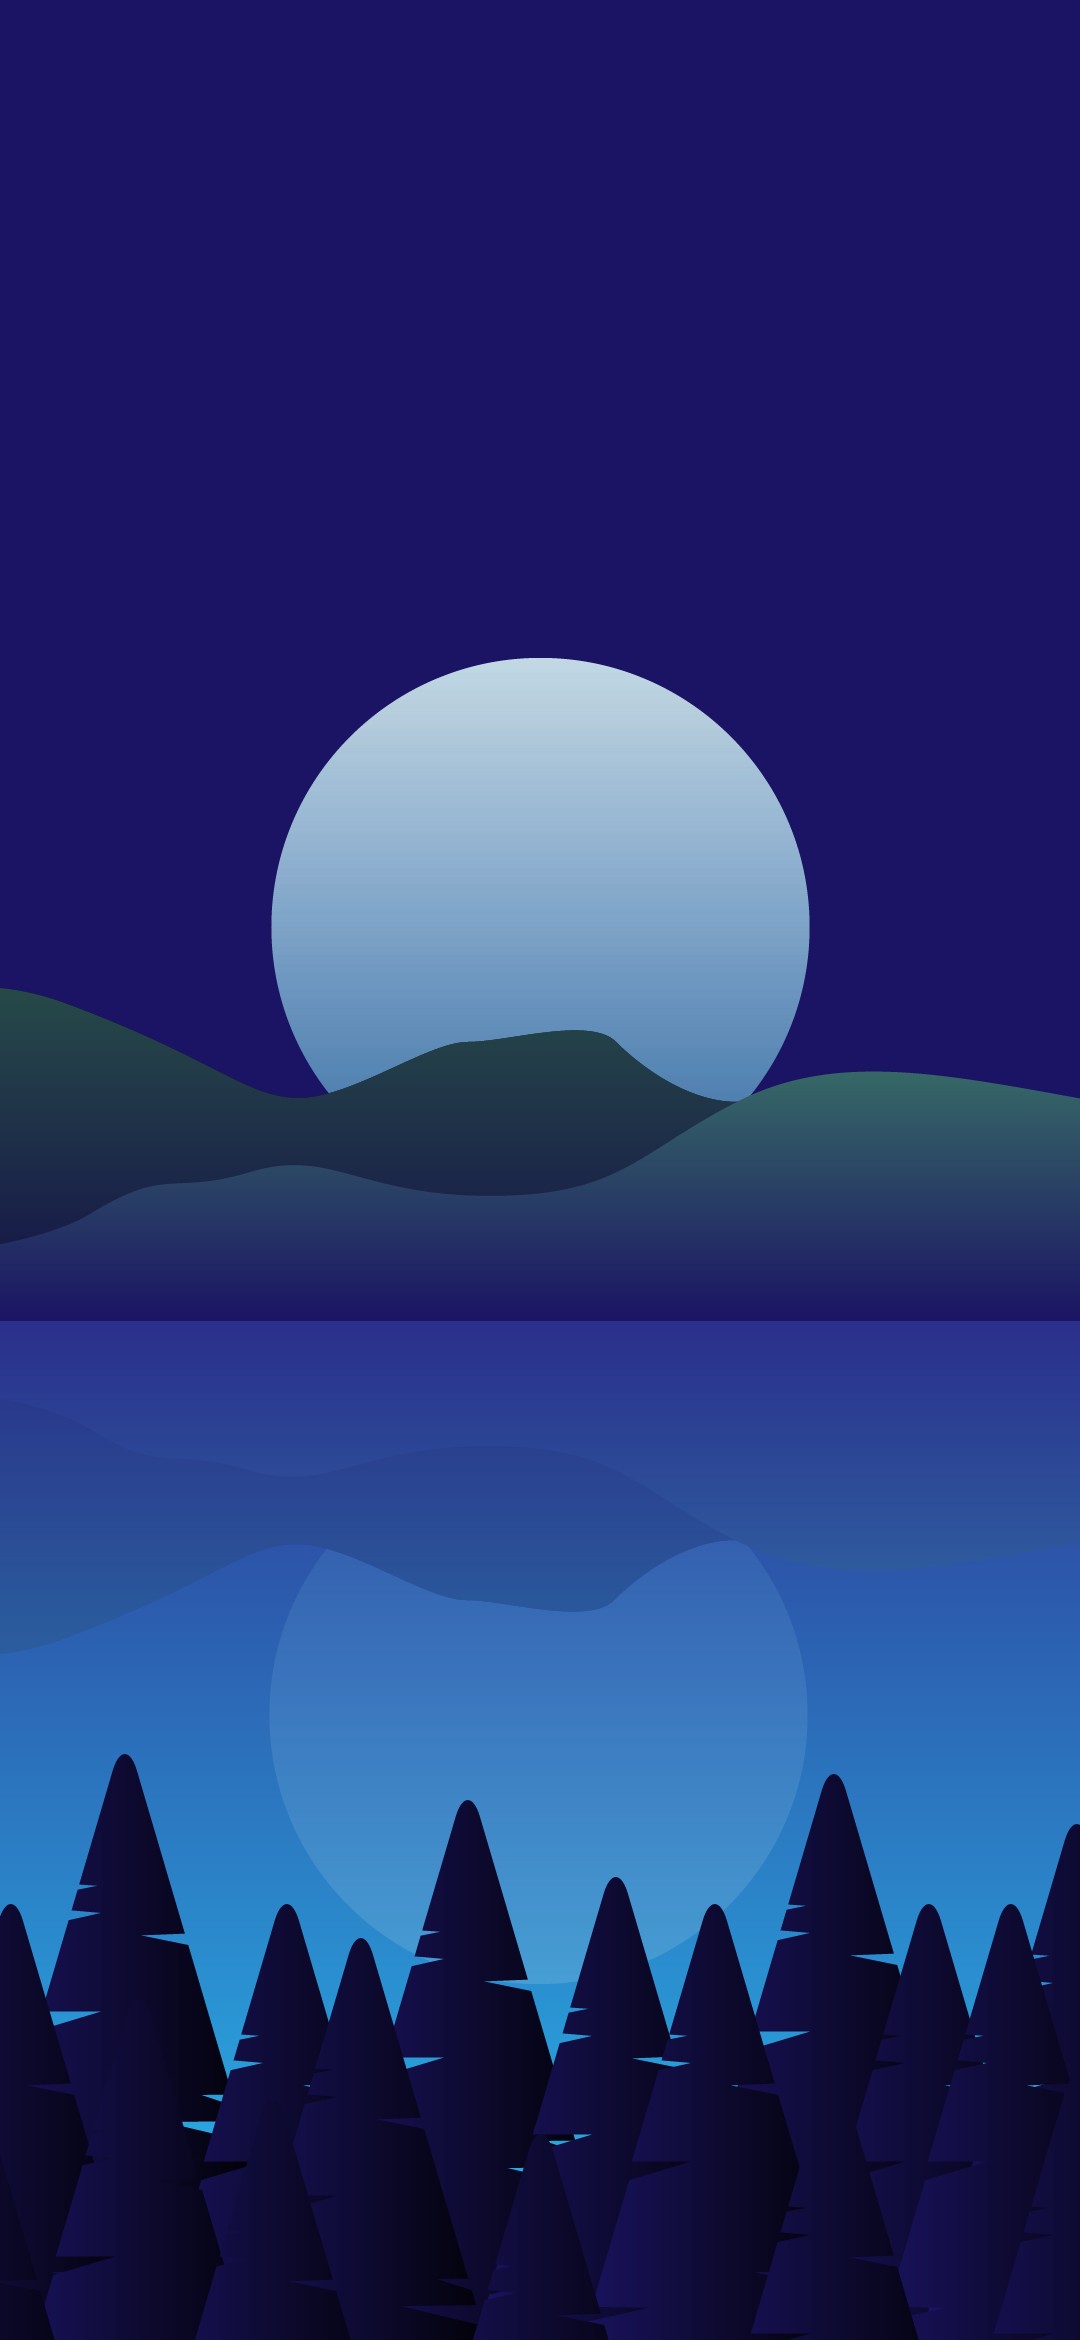 湖に映る満月と星 イラスト Google Pixel 5 Android 壁紙 待ち受け スマラン